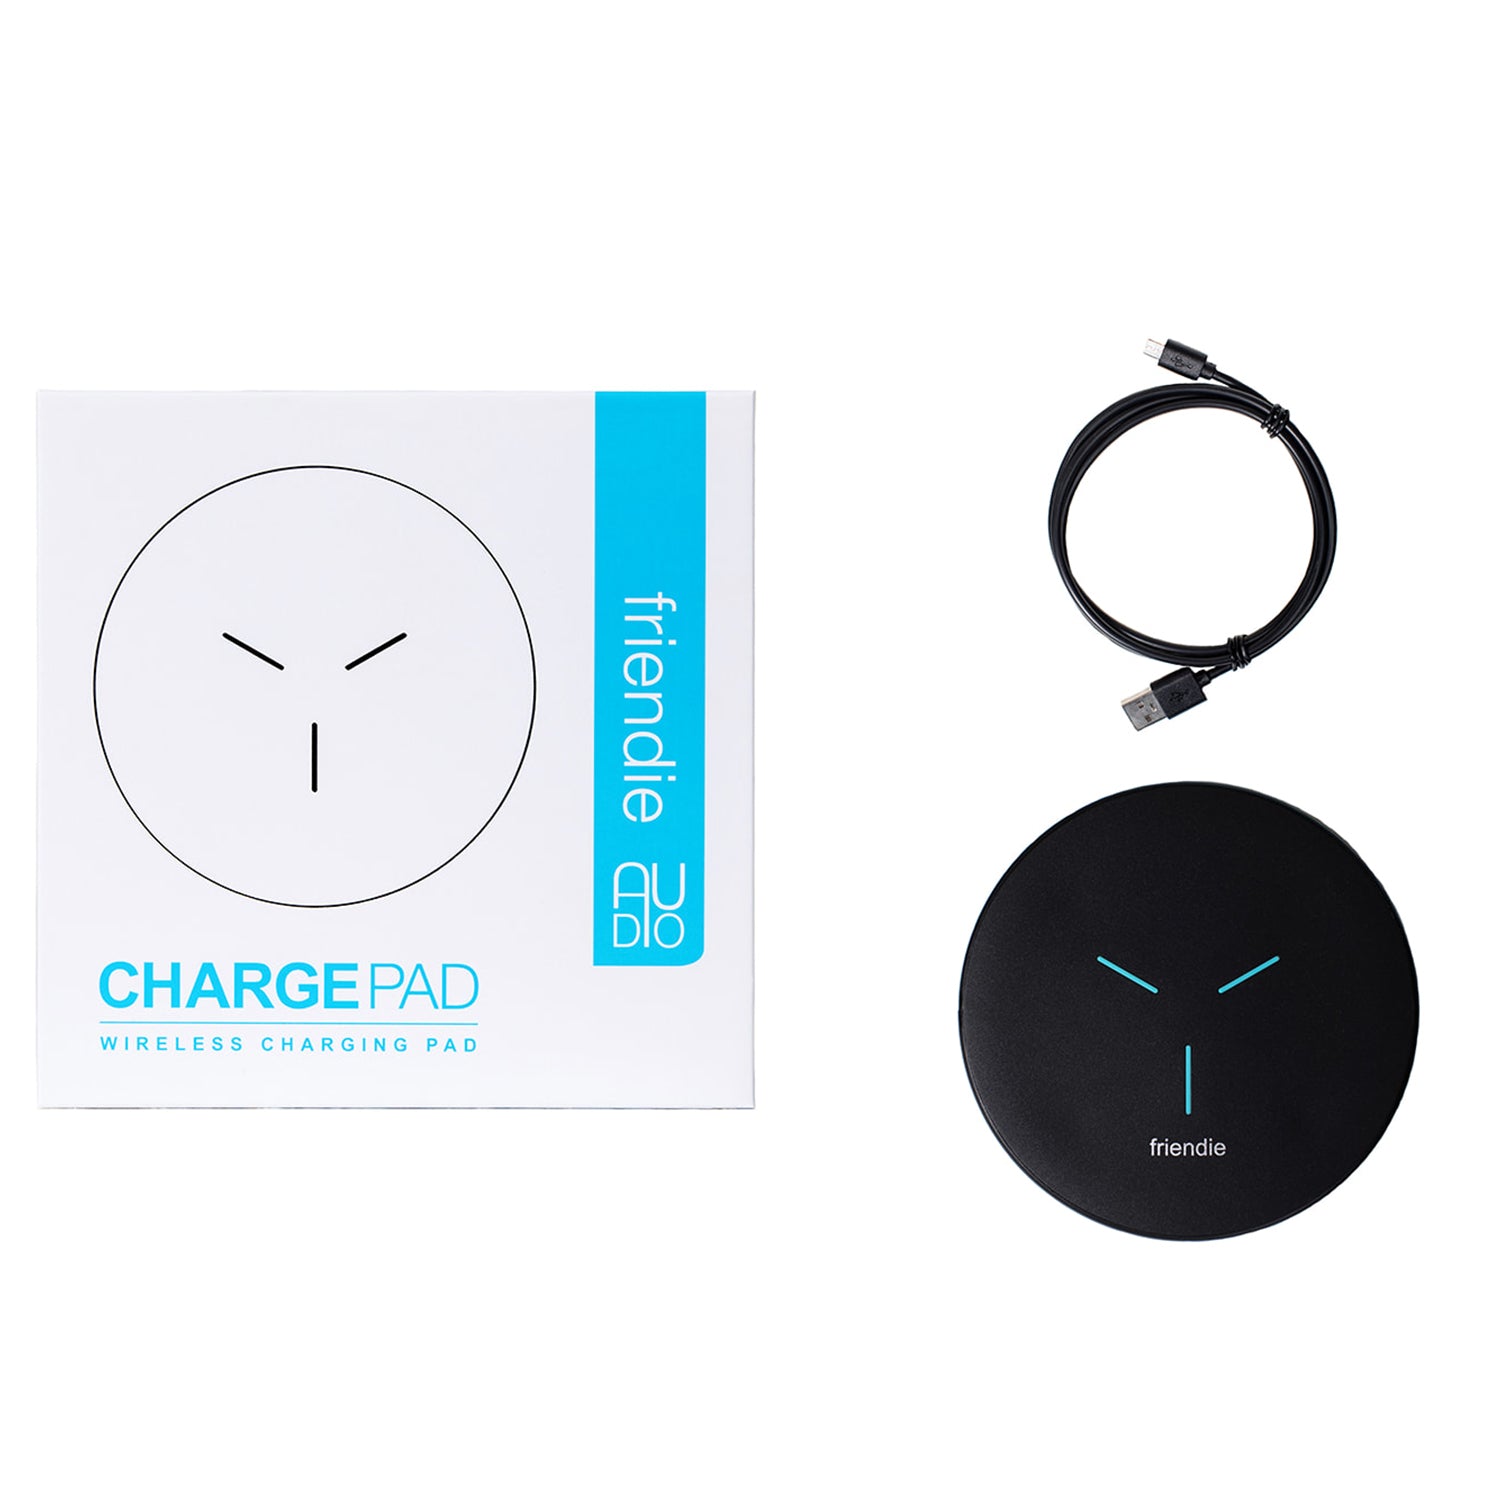 Wireless Charging Pad, Charging, Friendie Audio Pty Ltd, Friendie Audio Pty Ltd